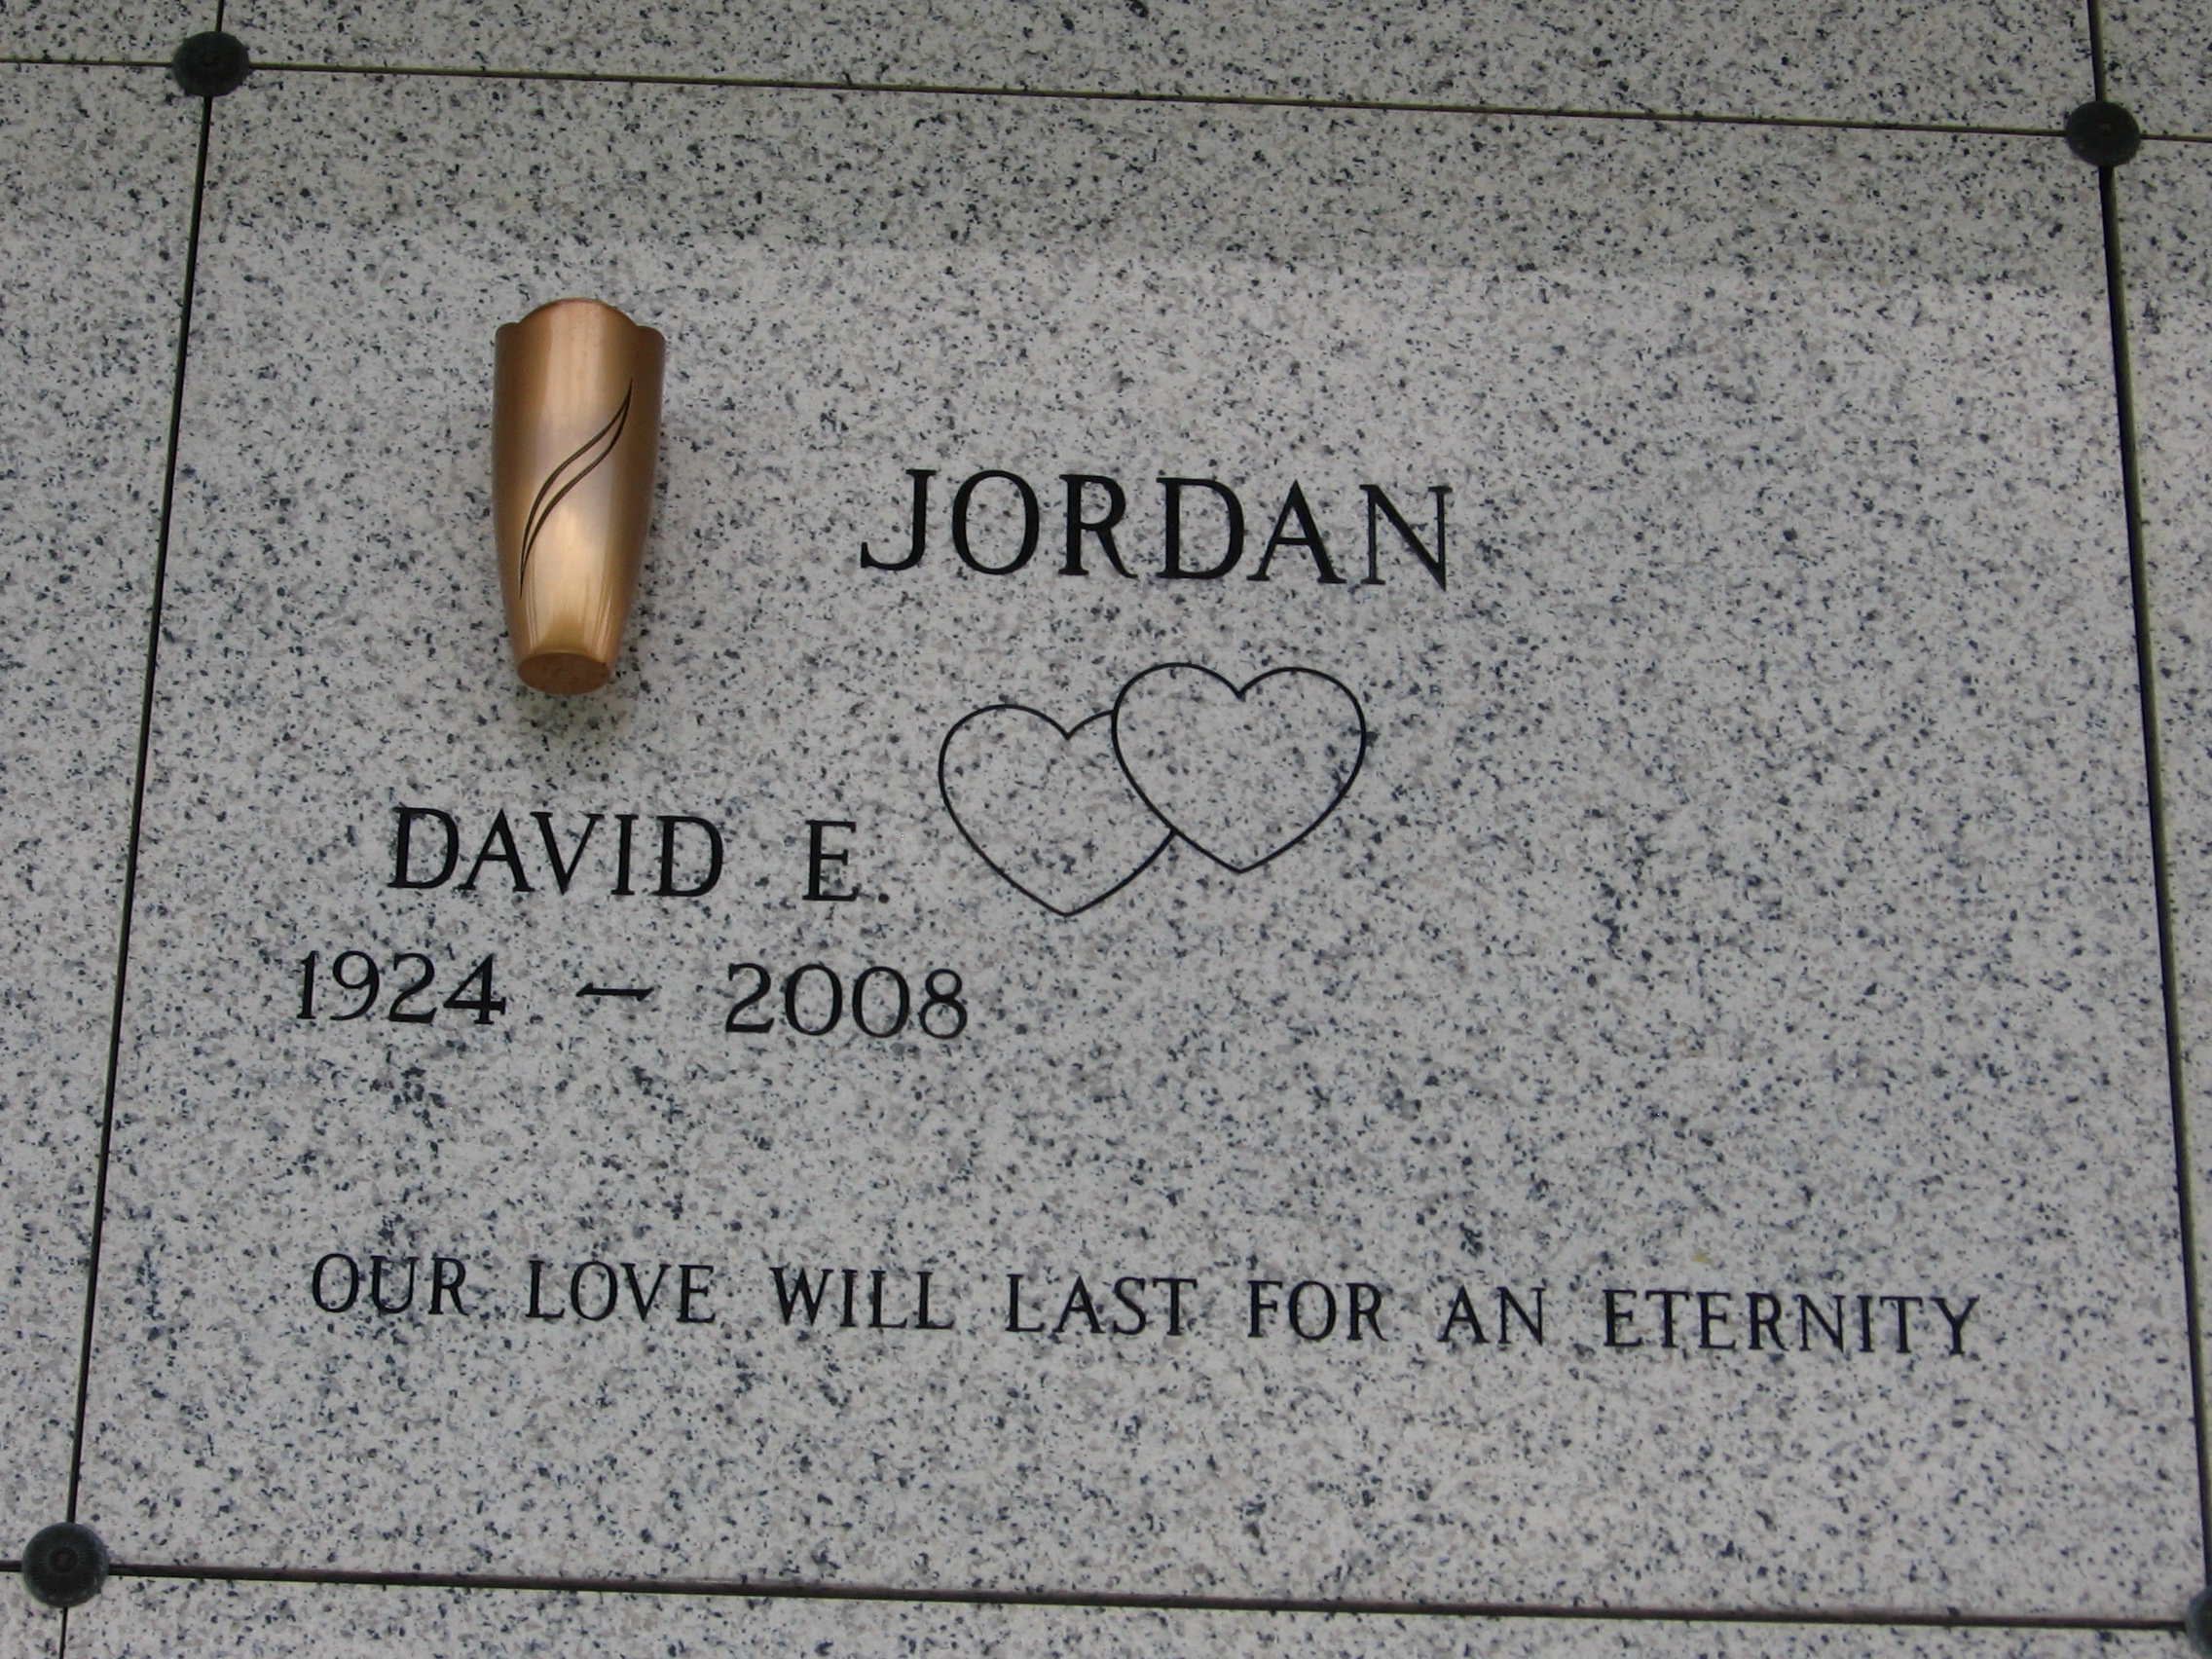 David E Jordan